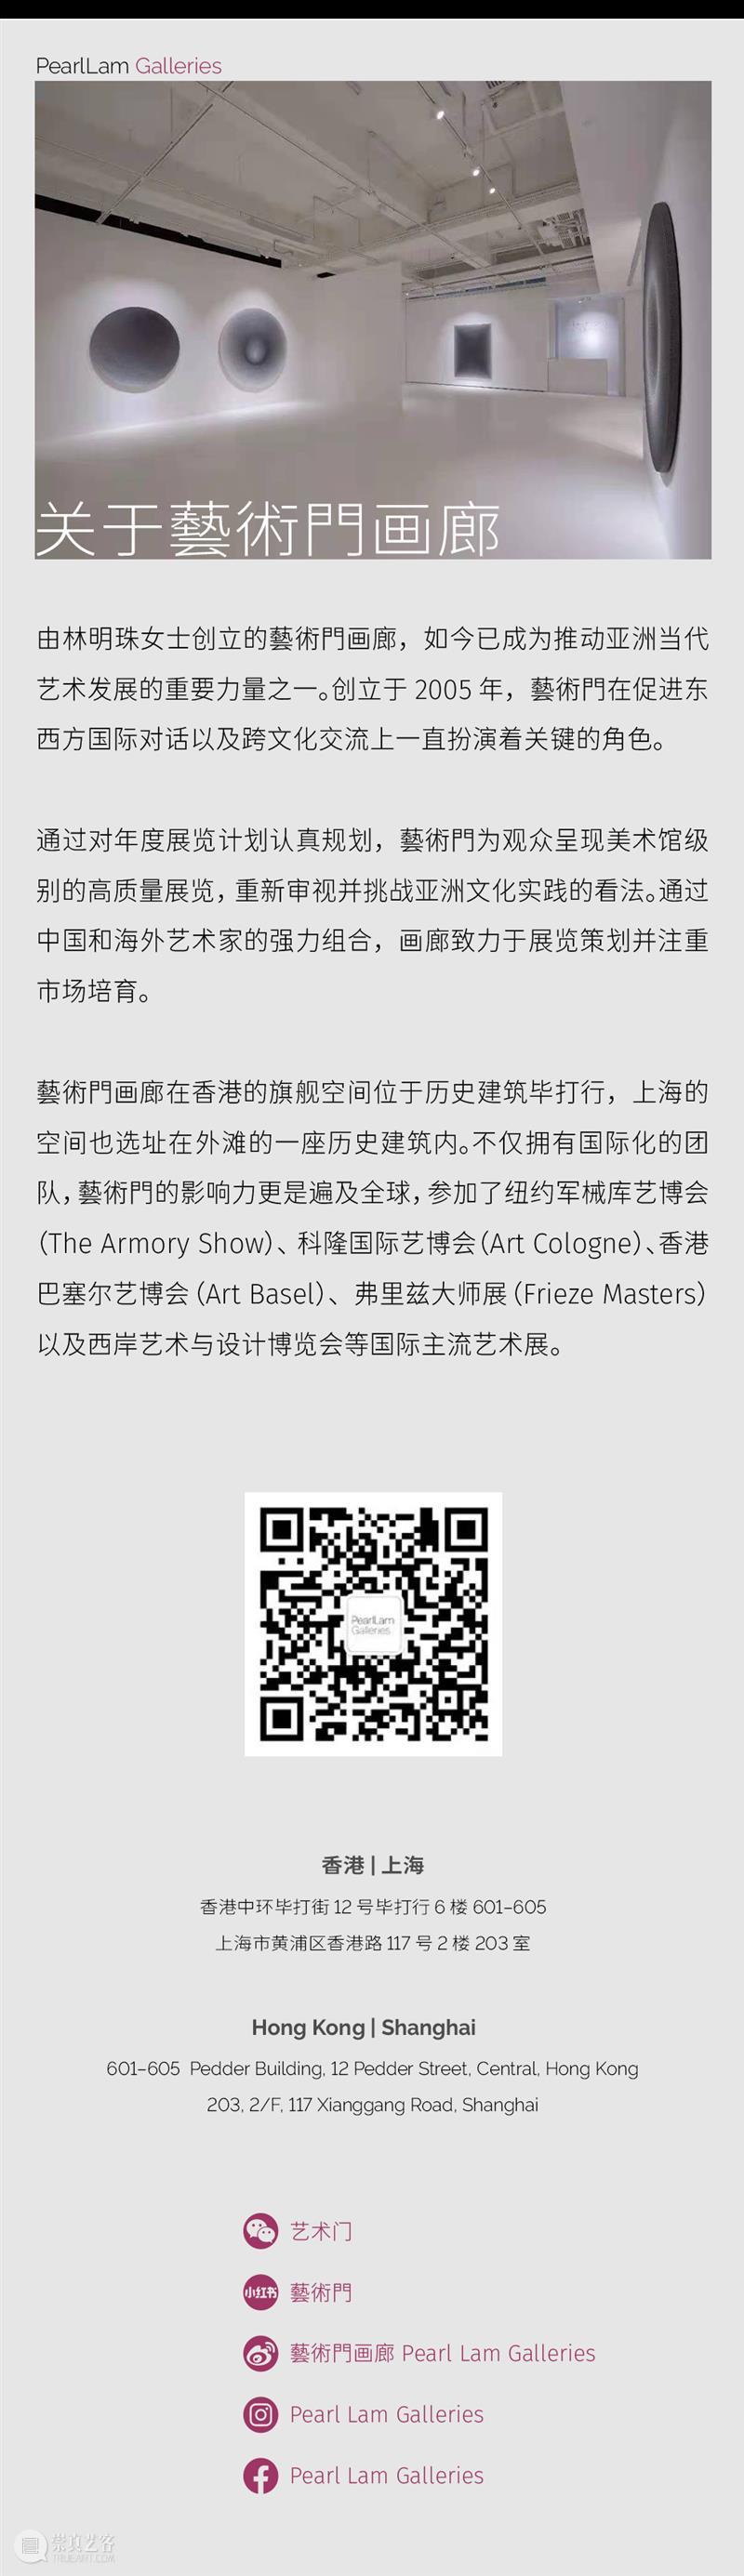 2022年巴塞尔艺术展香港展会 | 藝術門展位 1D16 崇真艺客